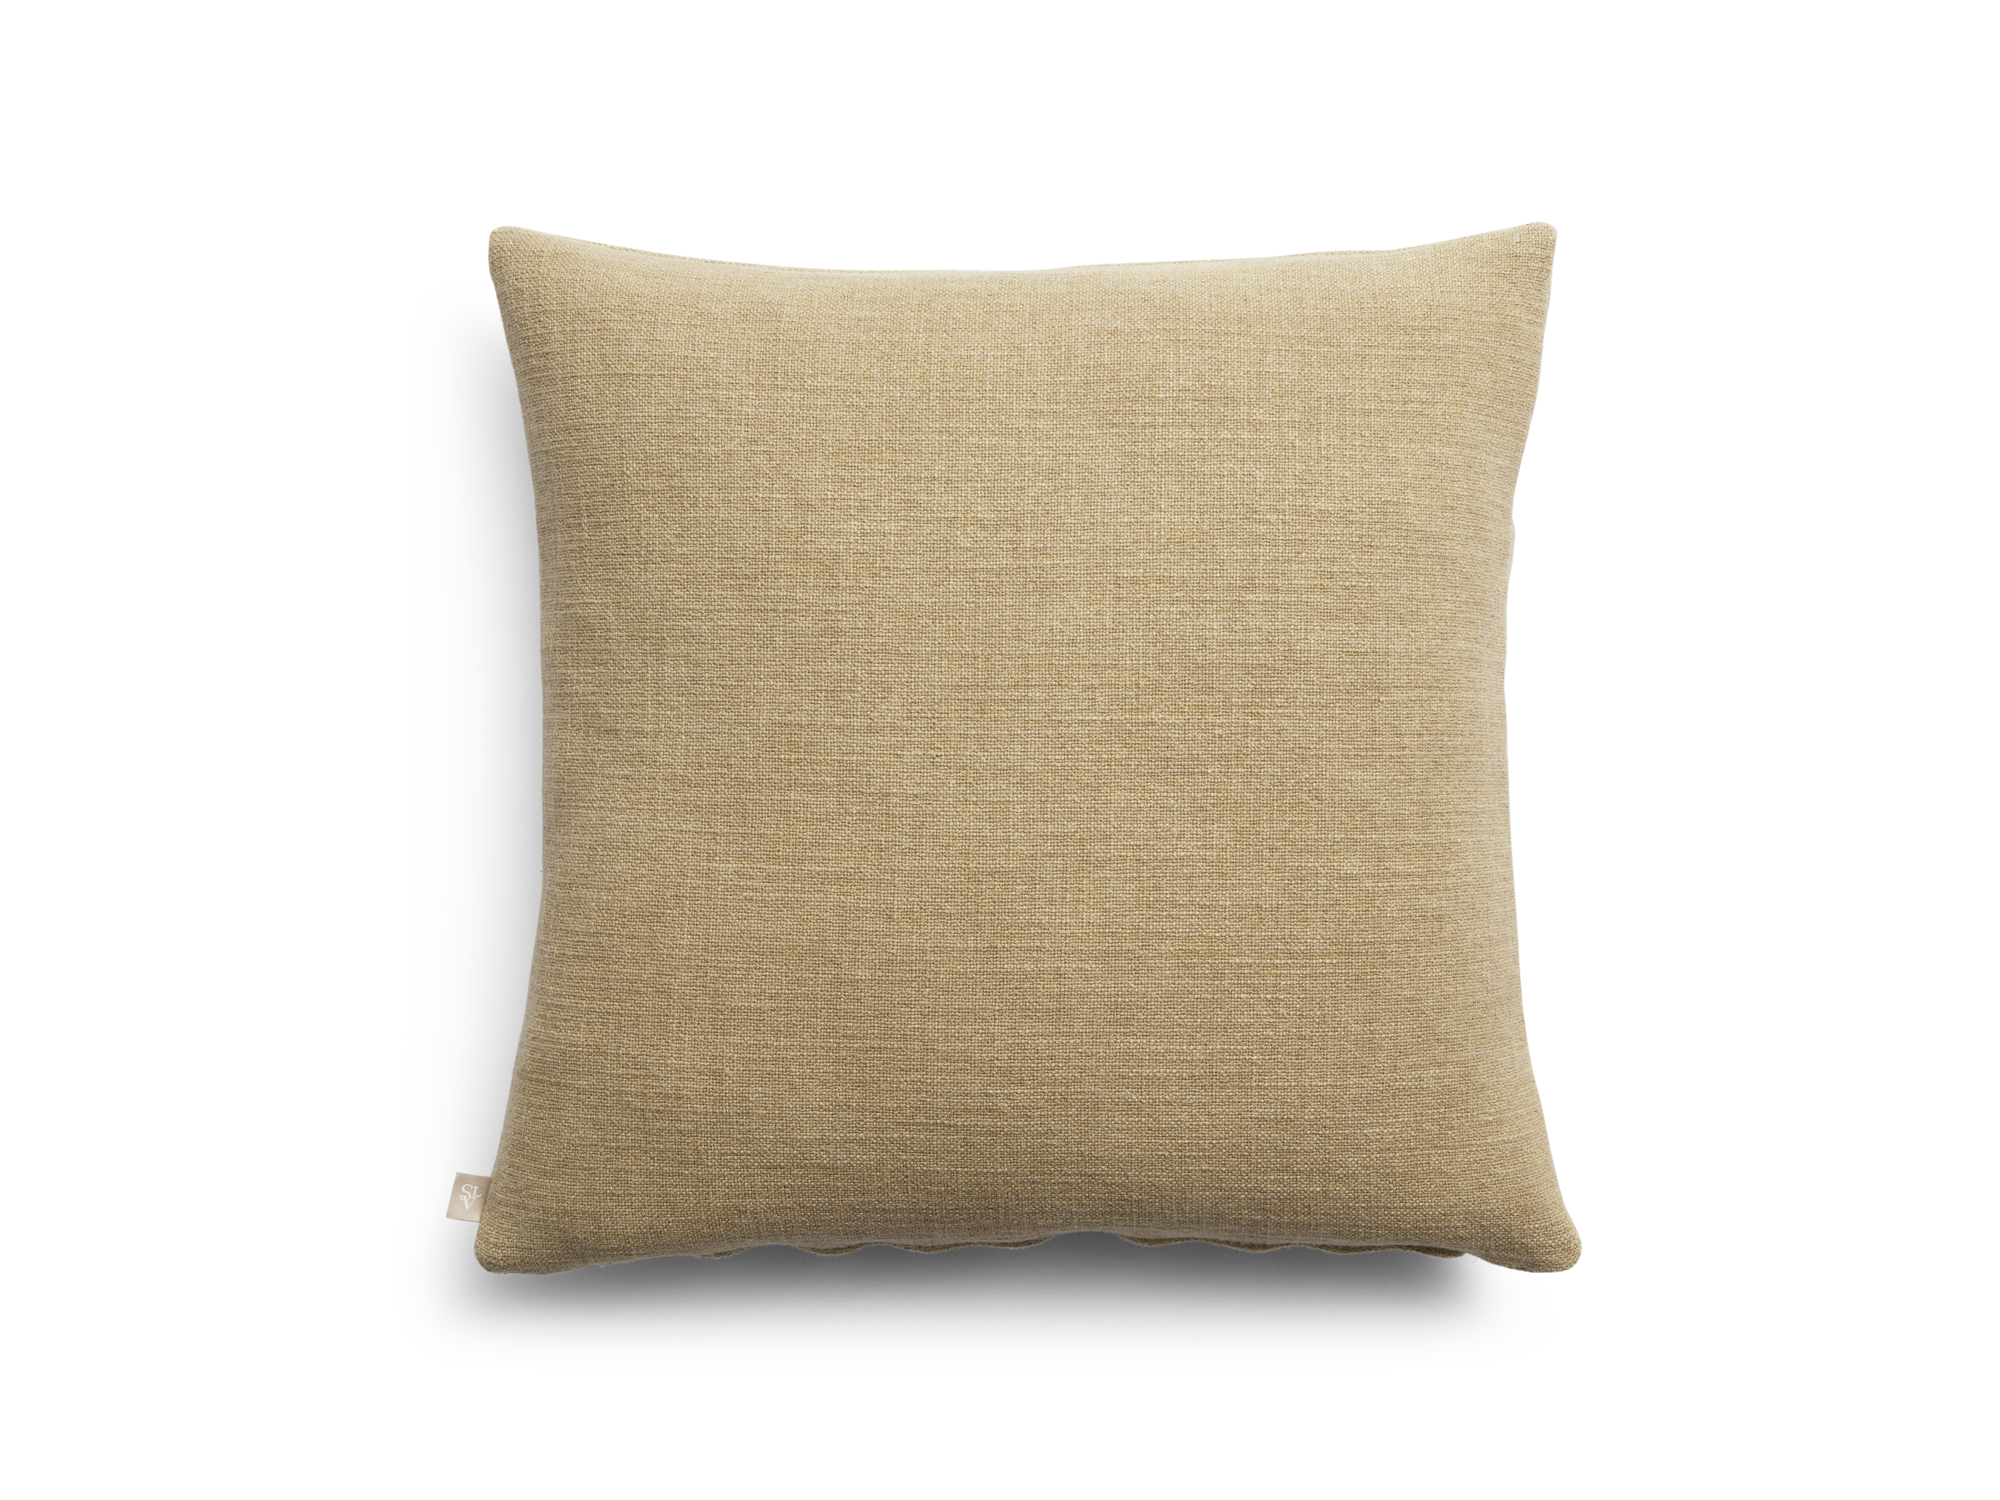 Aristocrat decorative pillow